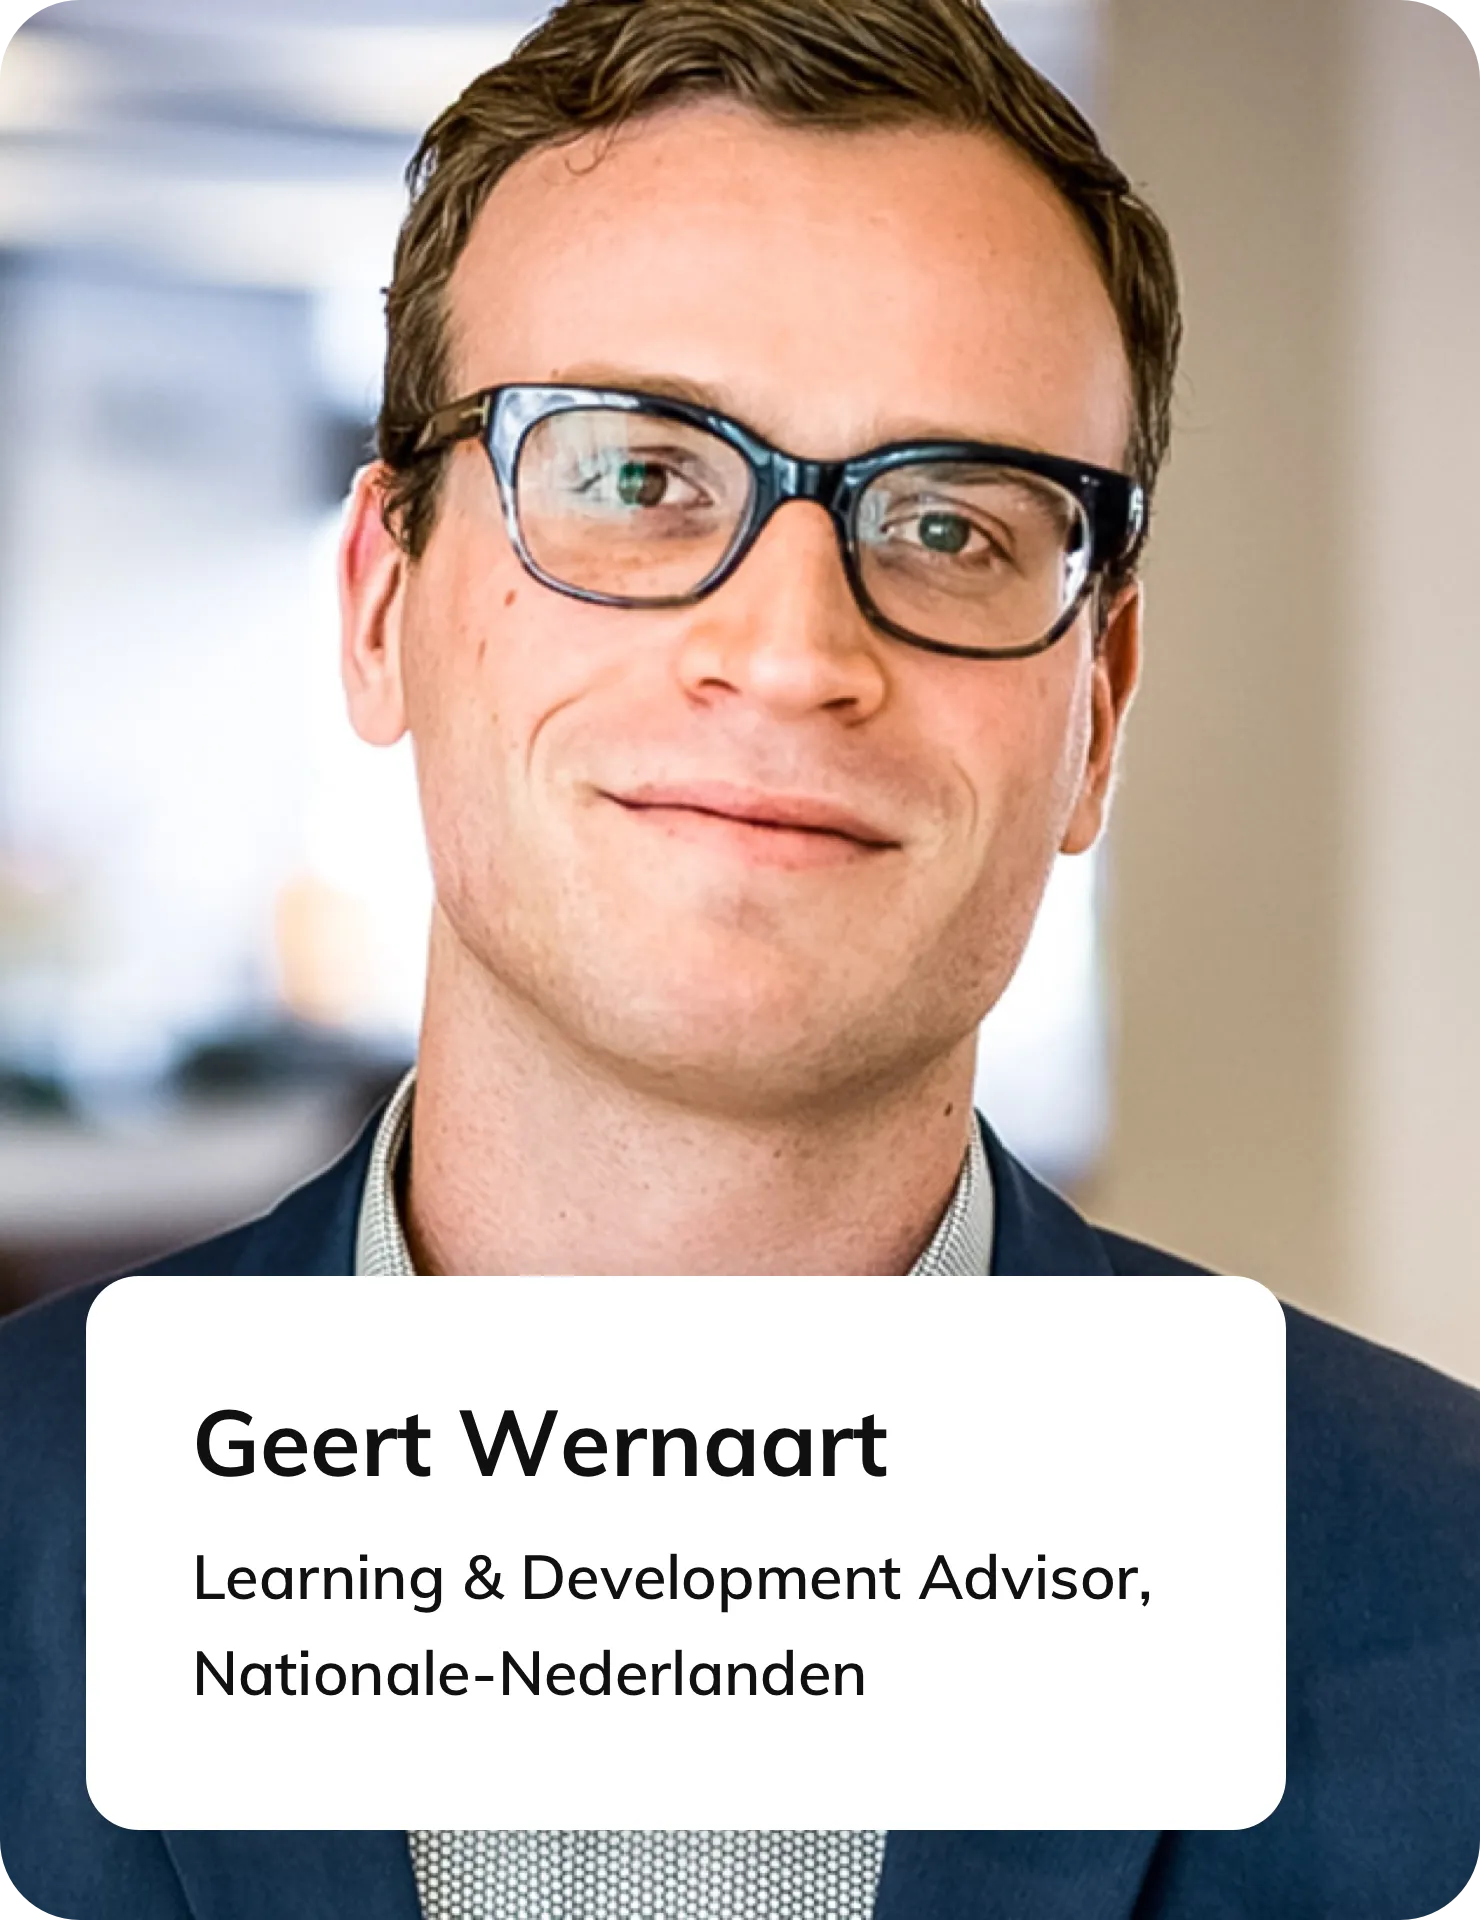 Learning & Development Advisor Geert Wernaart van Nationale Nederlanden